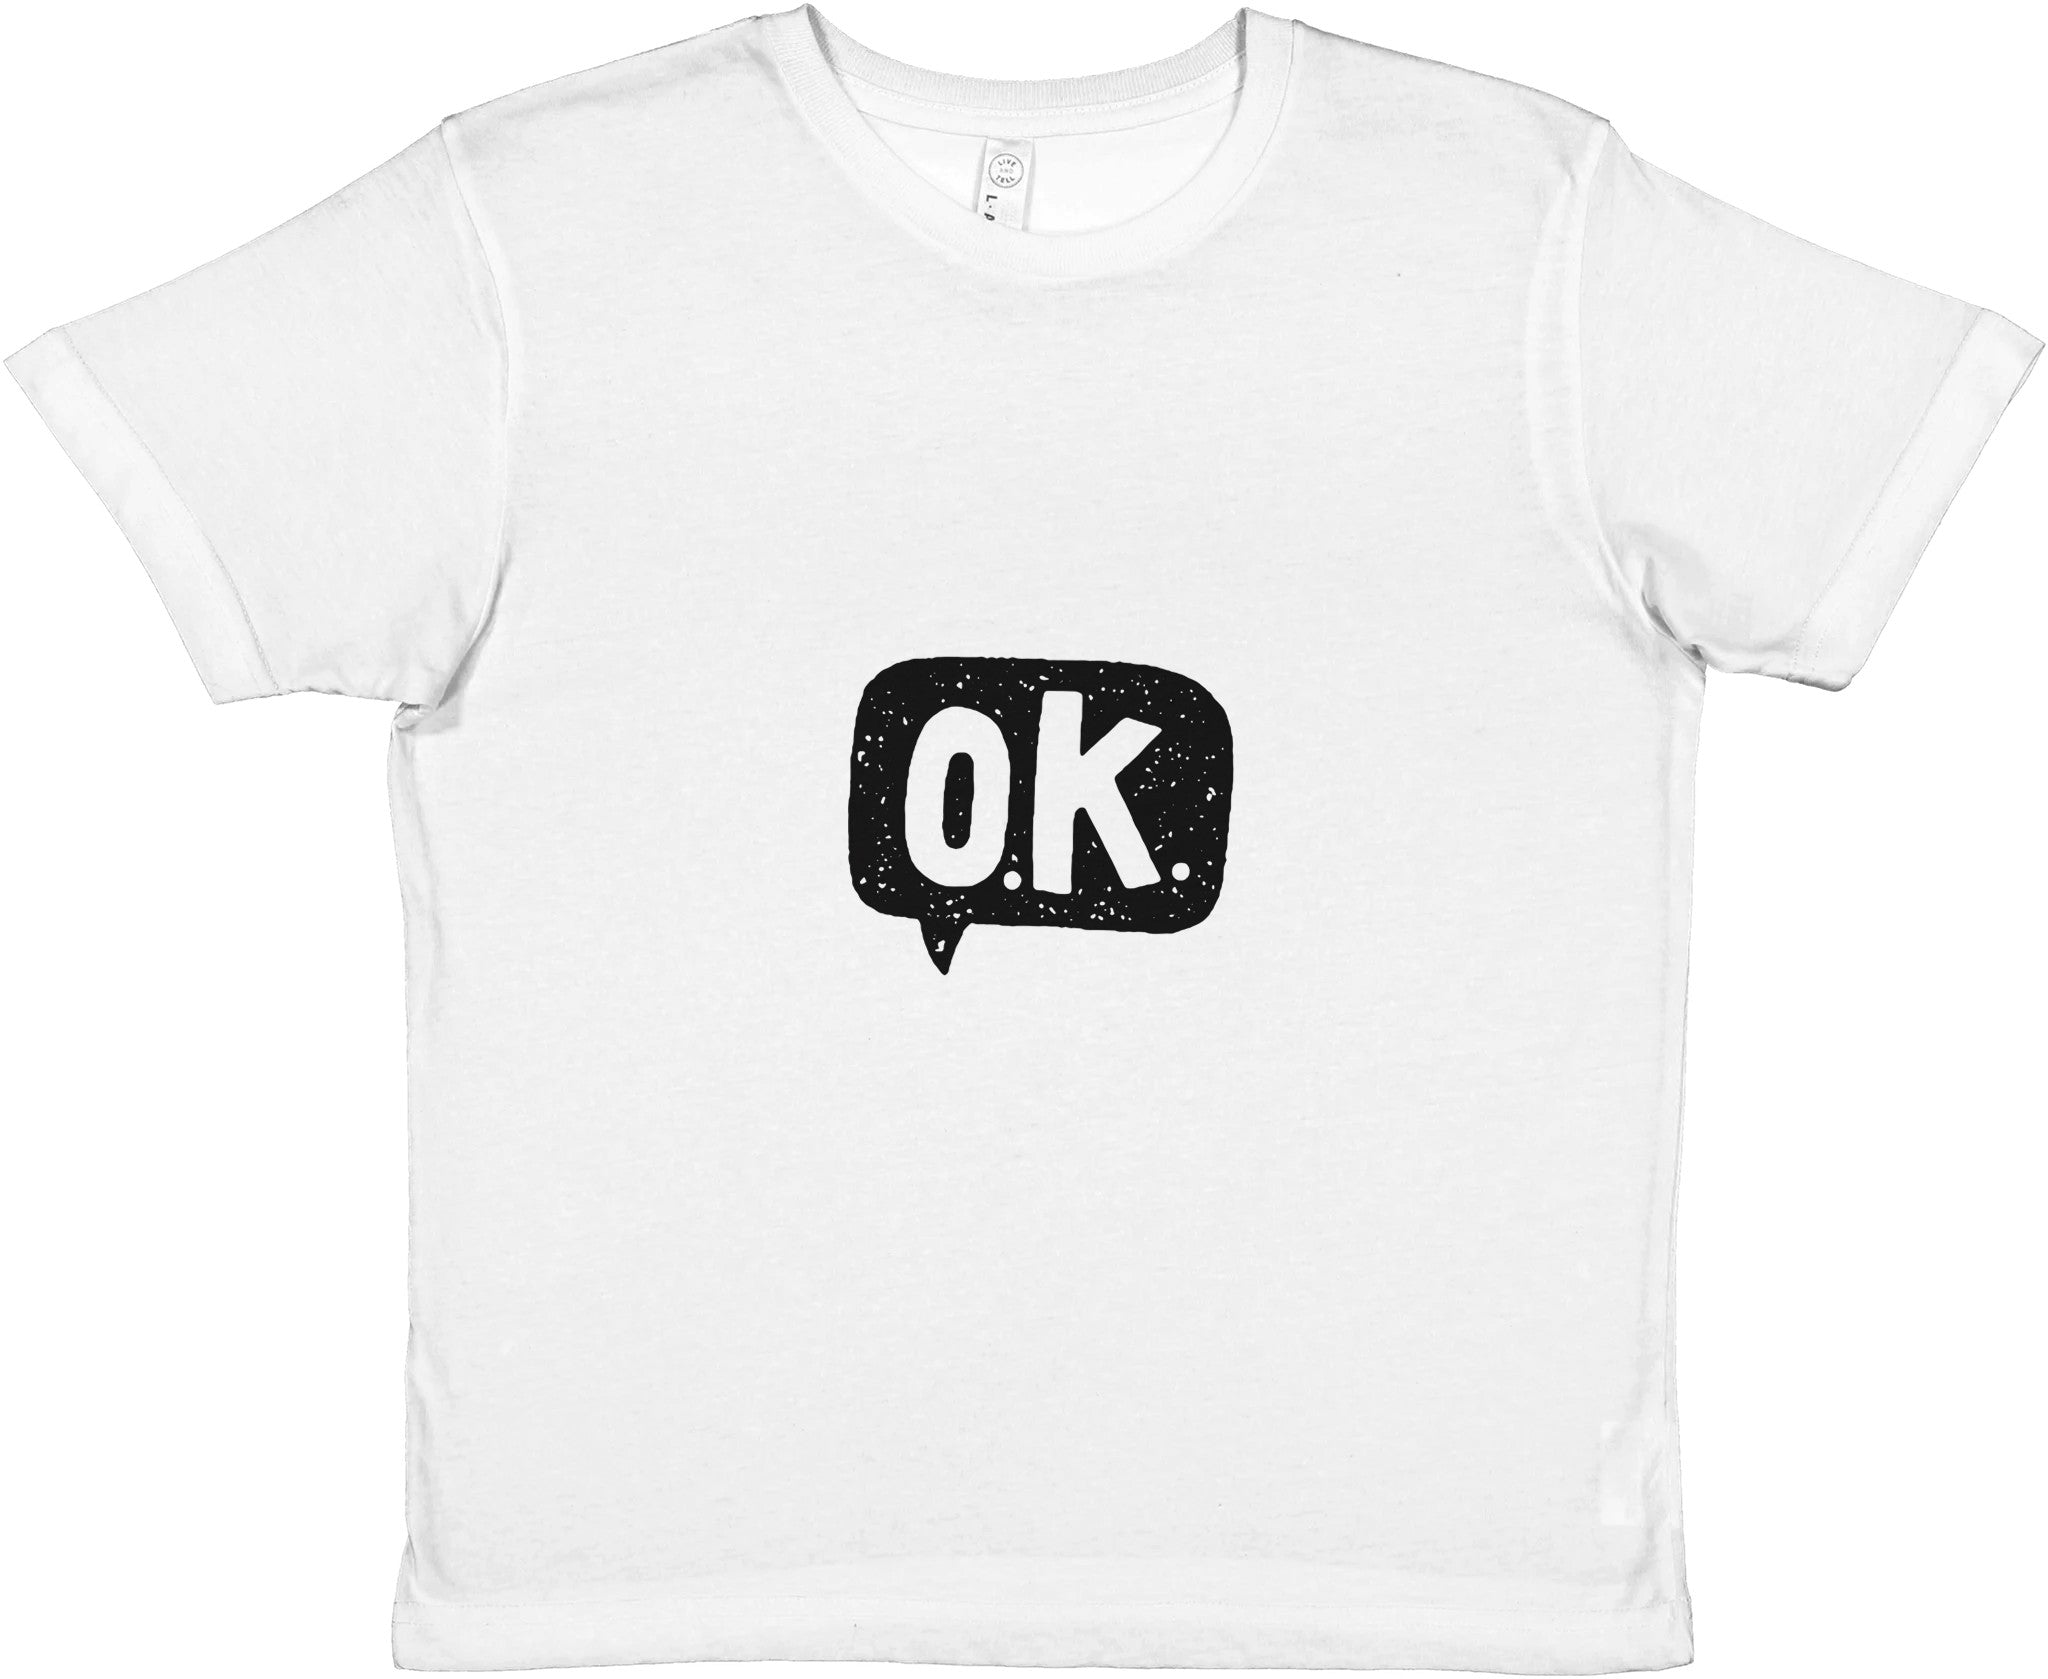 OK Kids Crewneck T-shirt - Optimalprint